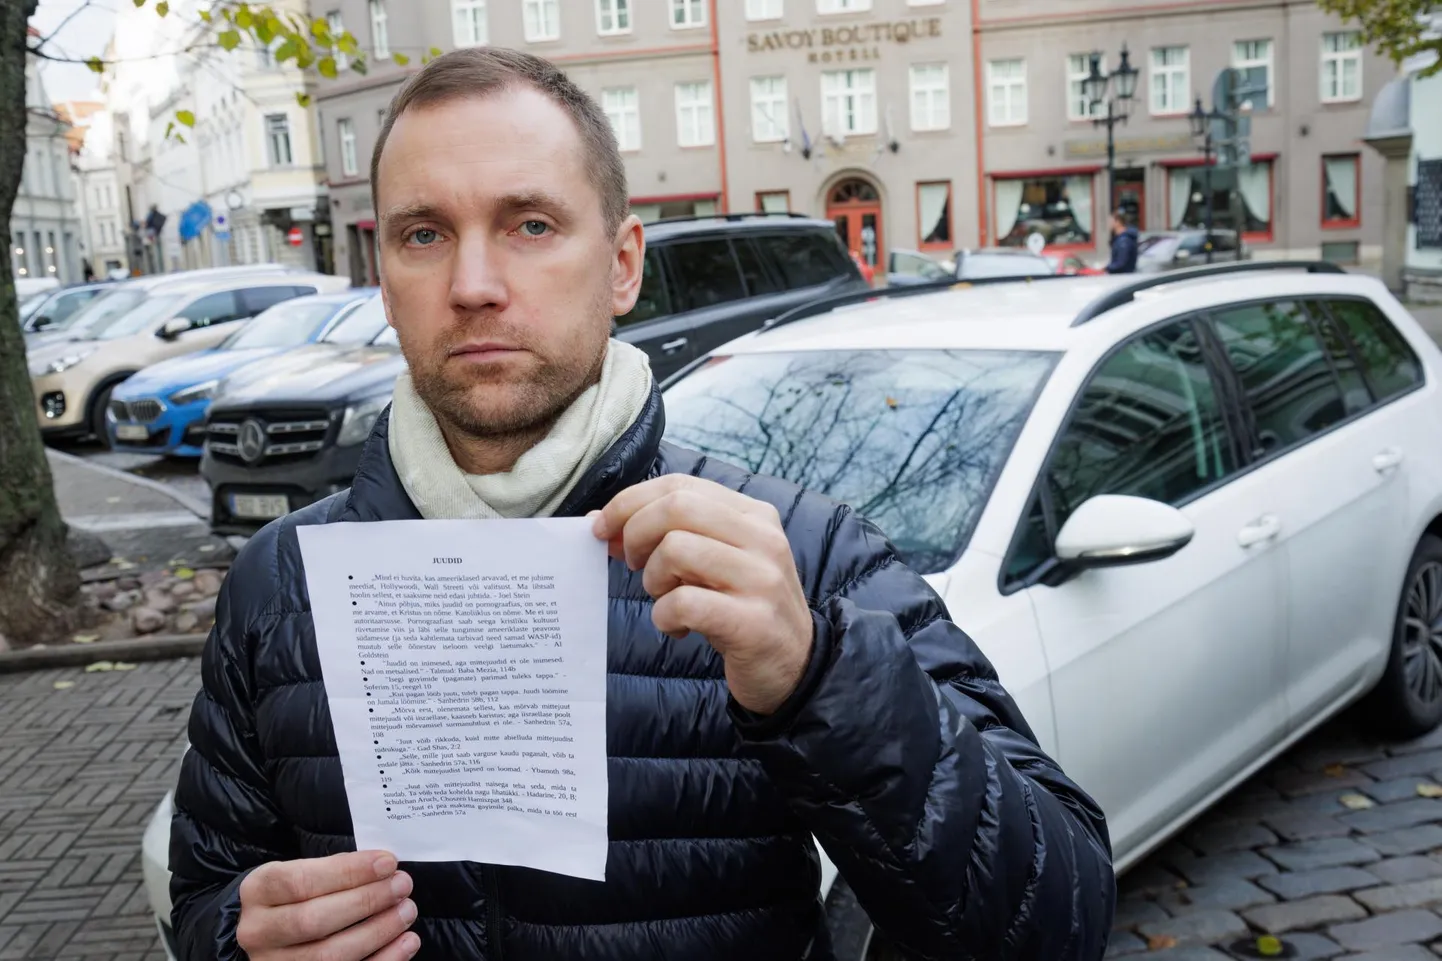 Станислав Немержицкий обнаружил антисемитскую листовку между дворниками своего автомобиля, припаркованного на улице Суур-Карья. Такие же листовки были и на лобовых стеклах других автомобилей.